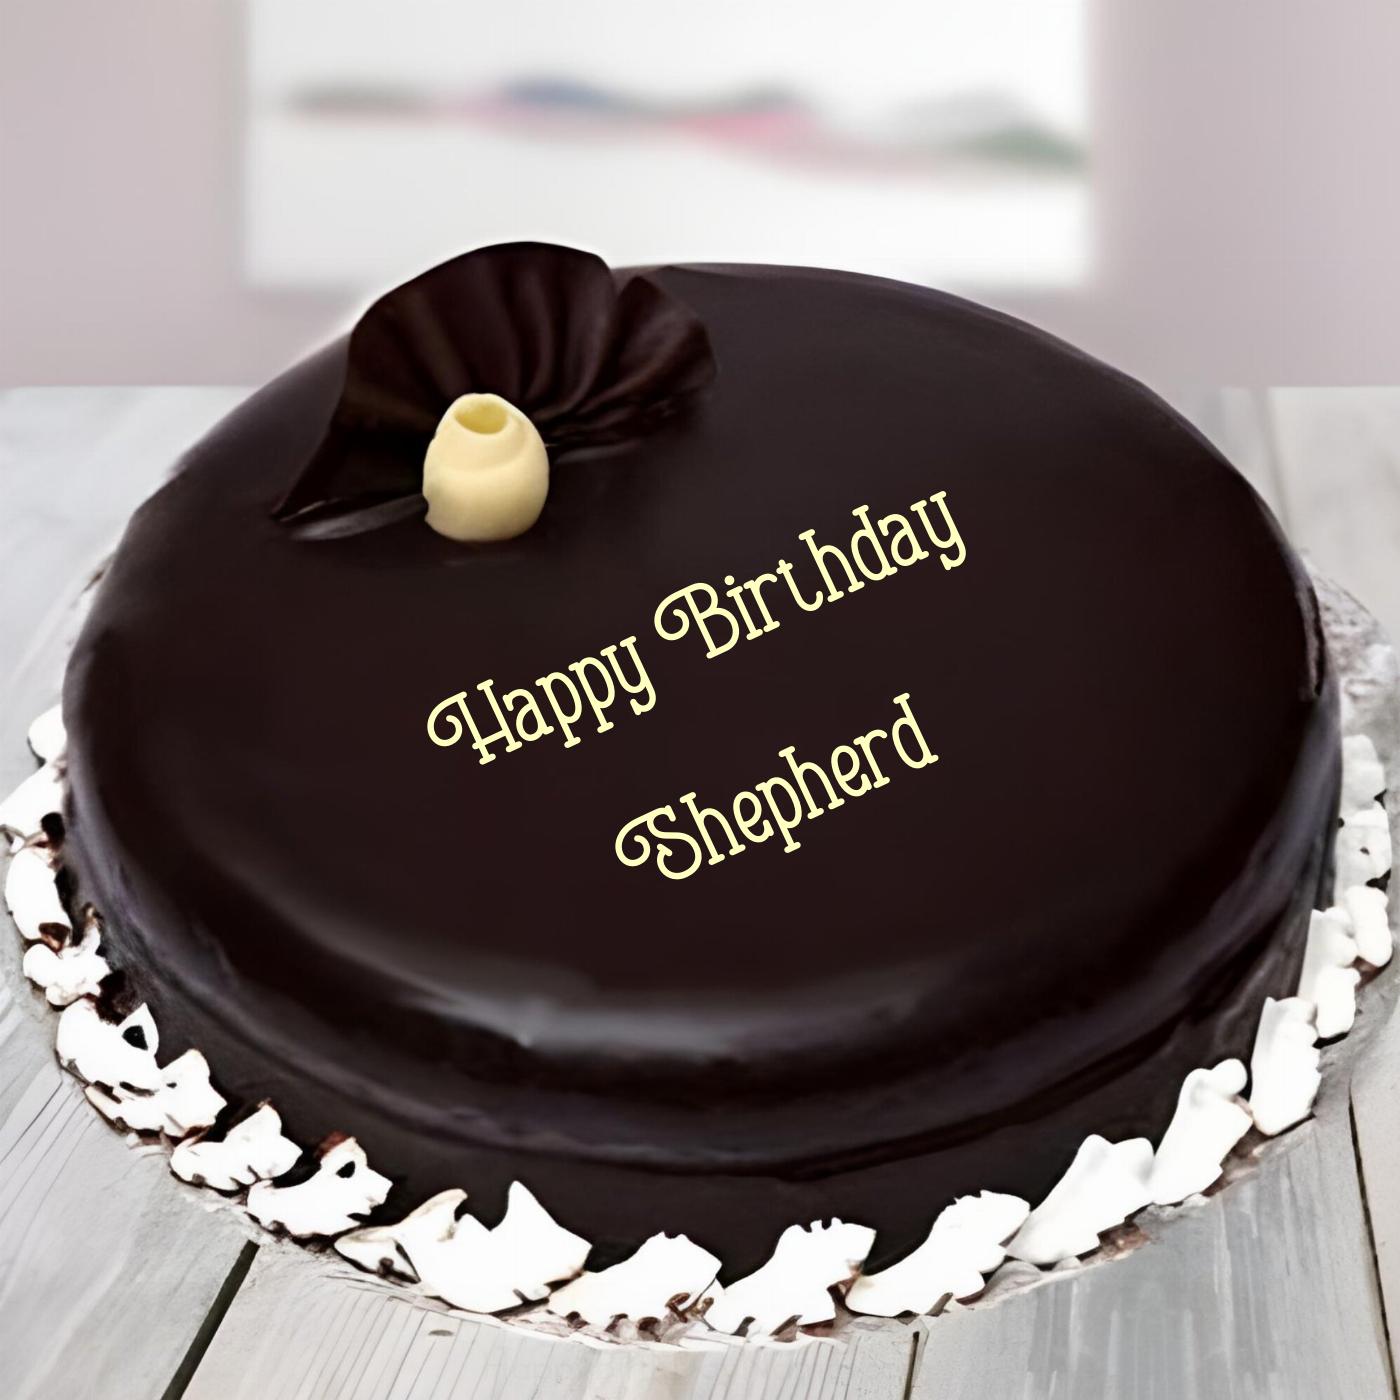 Happy Birthday Shepherd Beautiful Chocolate Cake